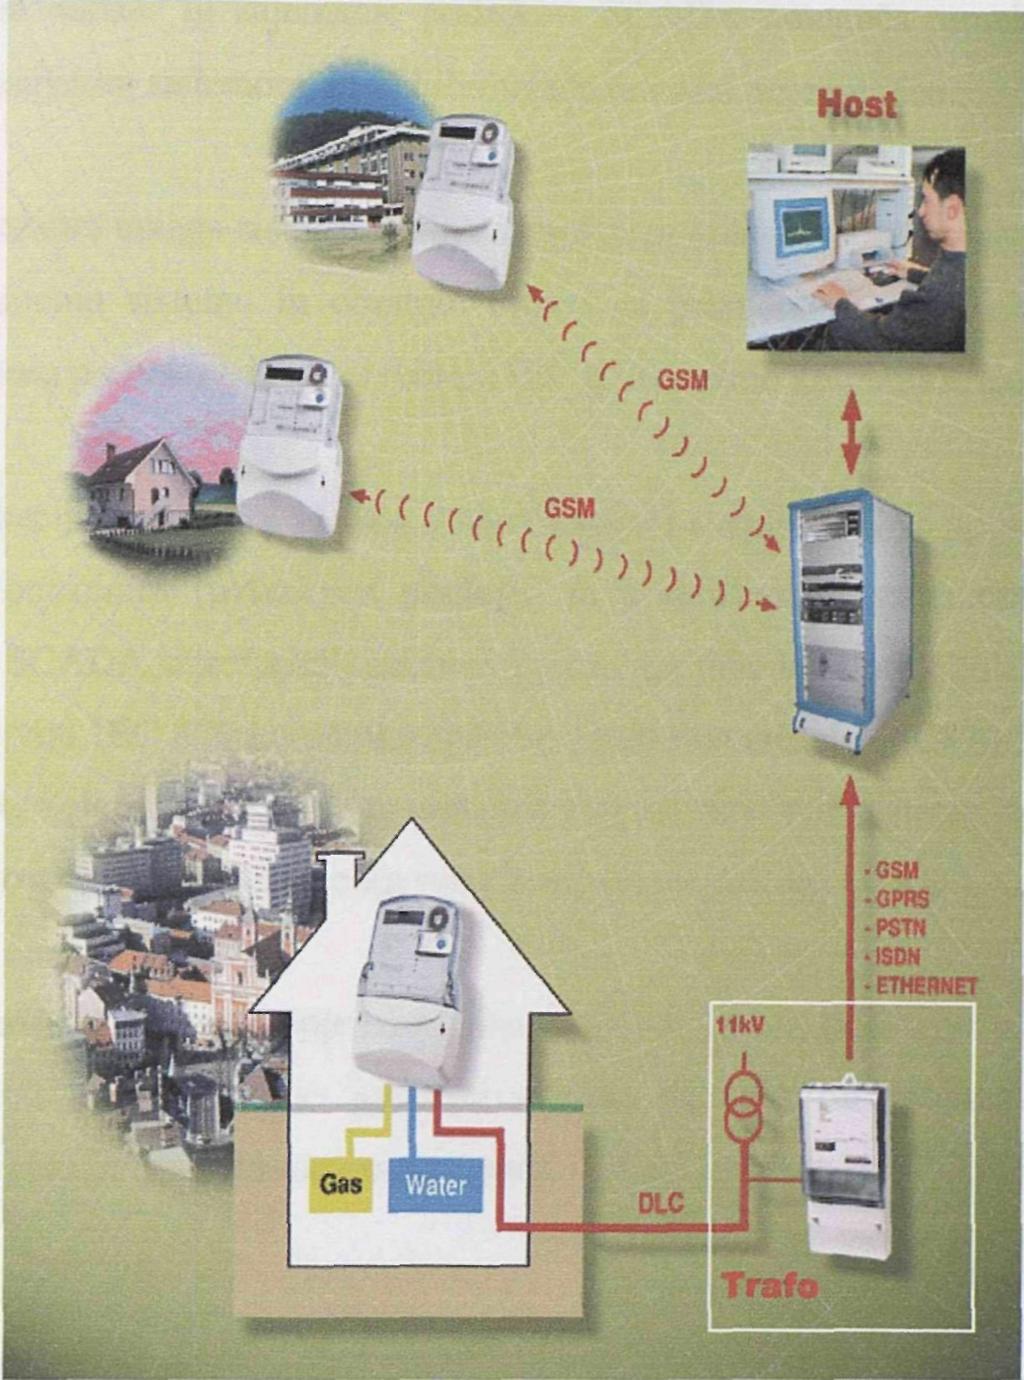 Analiza komunikacijskih protokolov Slika 4. Sodobni AMR sistem. Delovanje AMR sistema prikazuje slika 4.